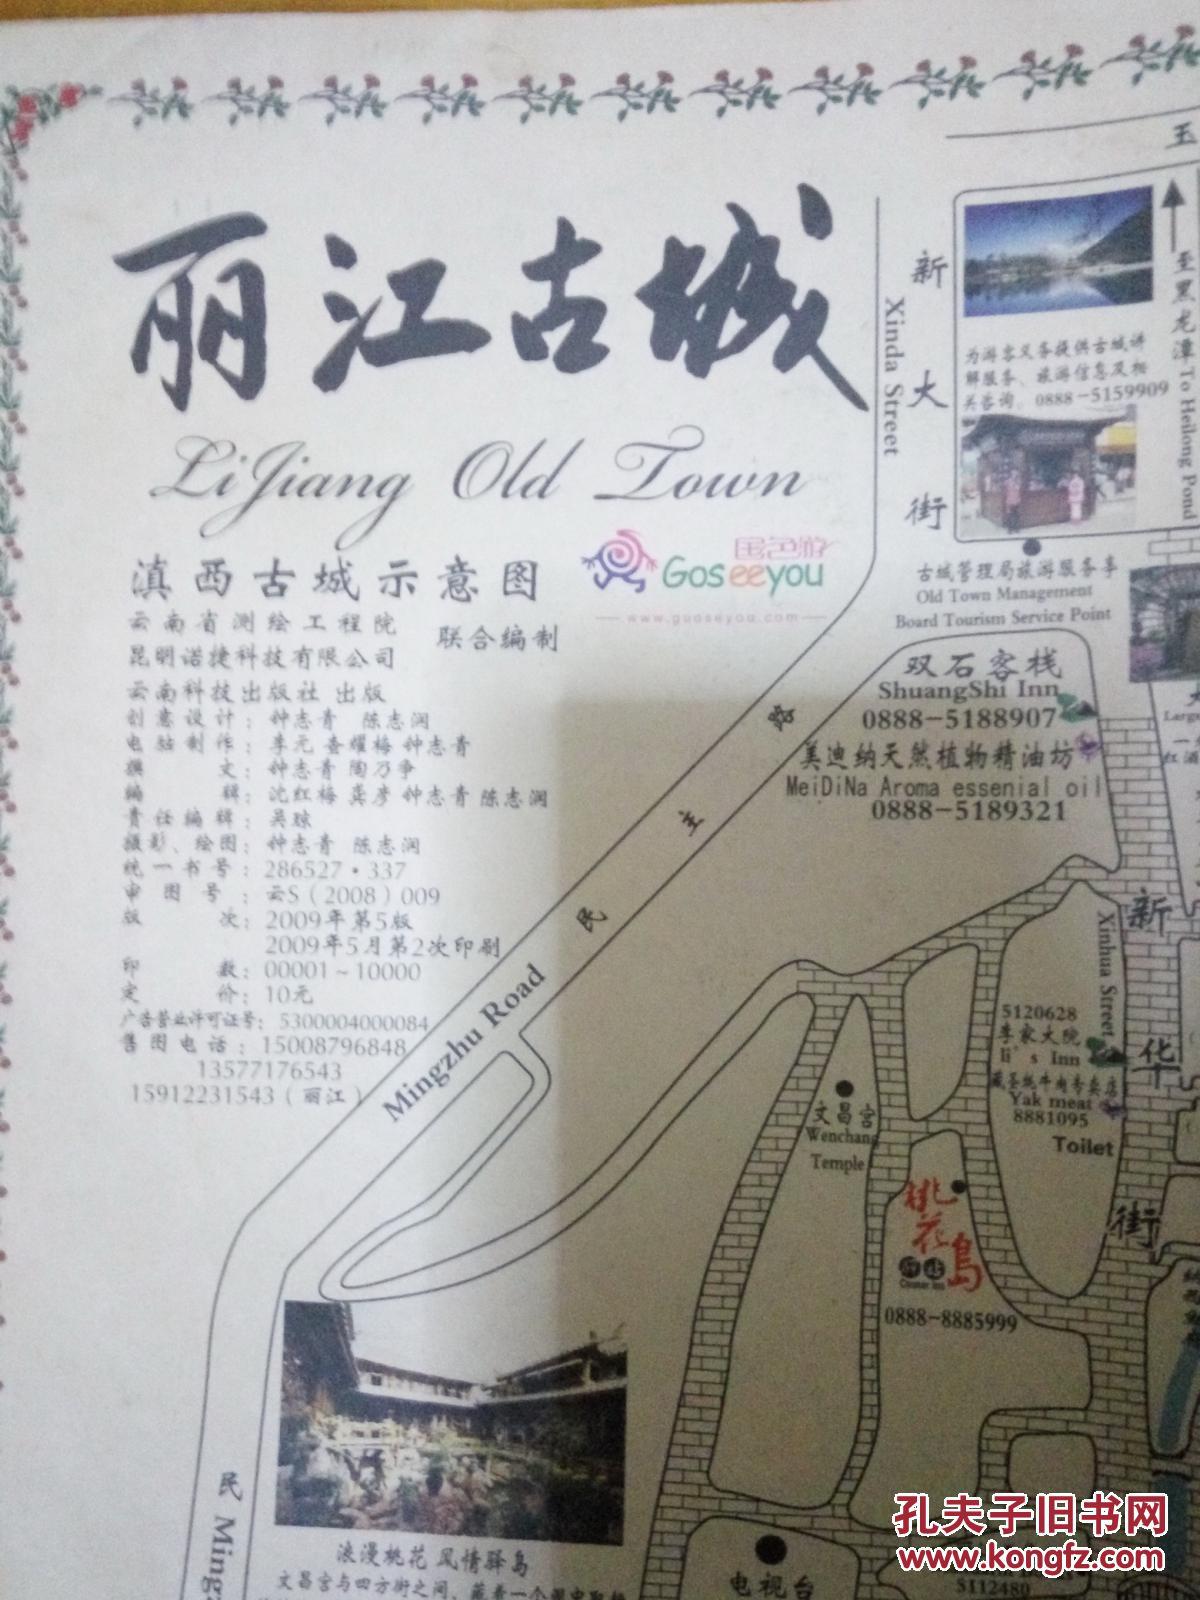 老旧地图 2009年版 丽江古城(旅游地图) 滇西古